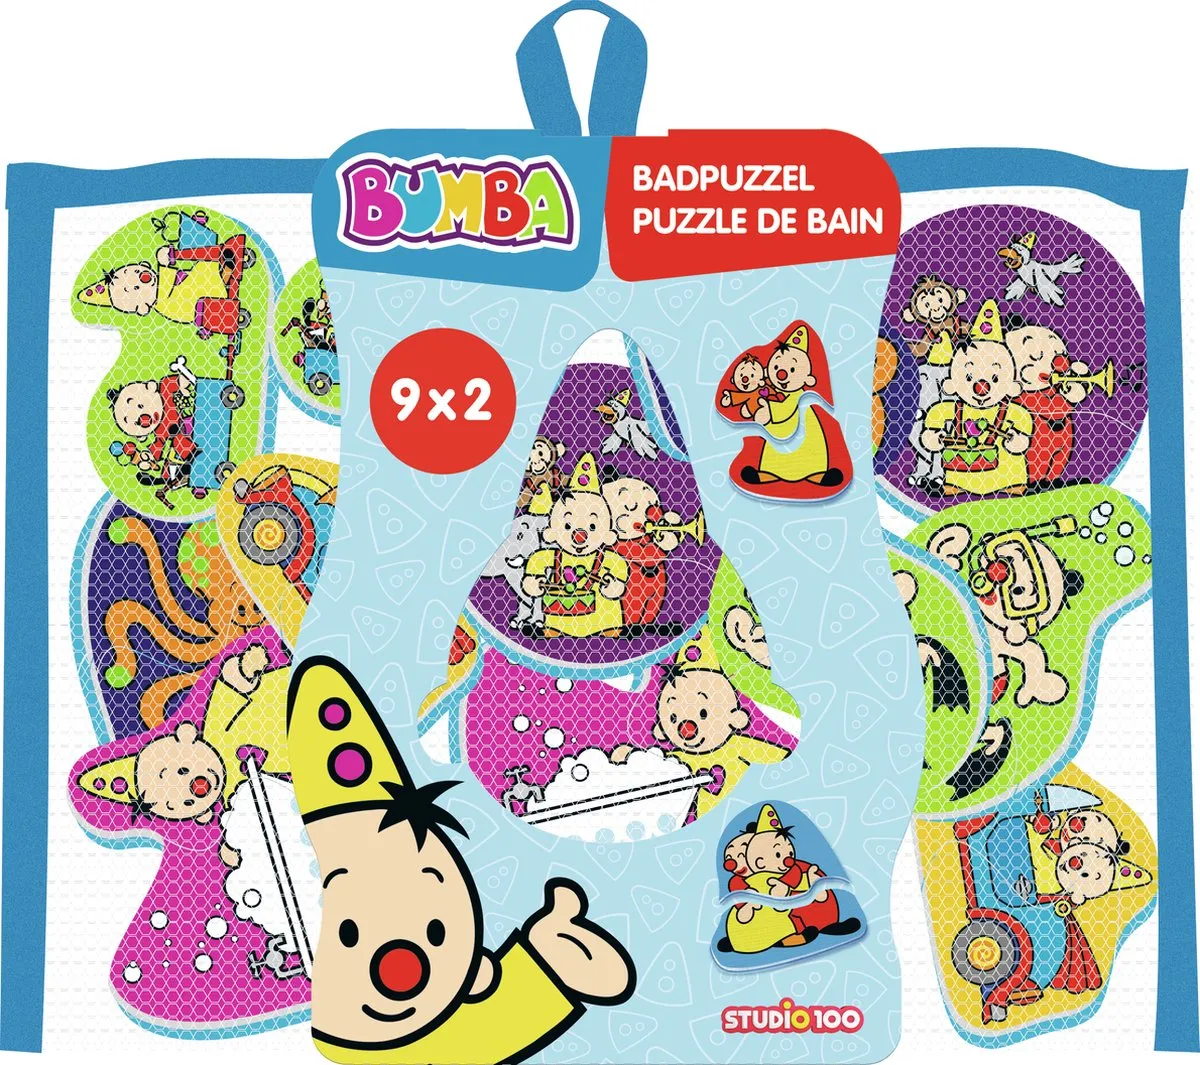 Bumba badspeelgoed - Bumba en Bumbina badboekje speelgoed